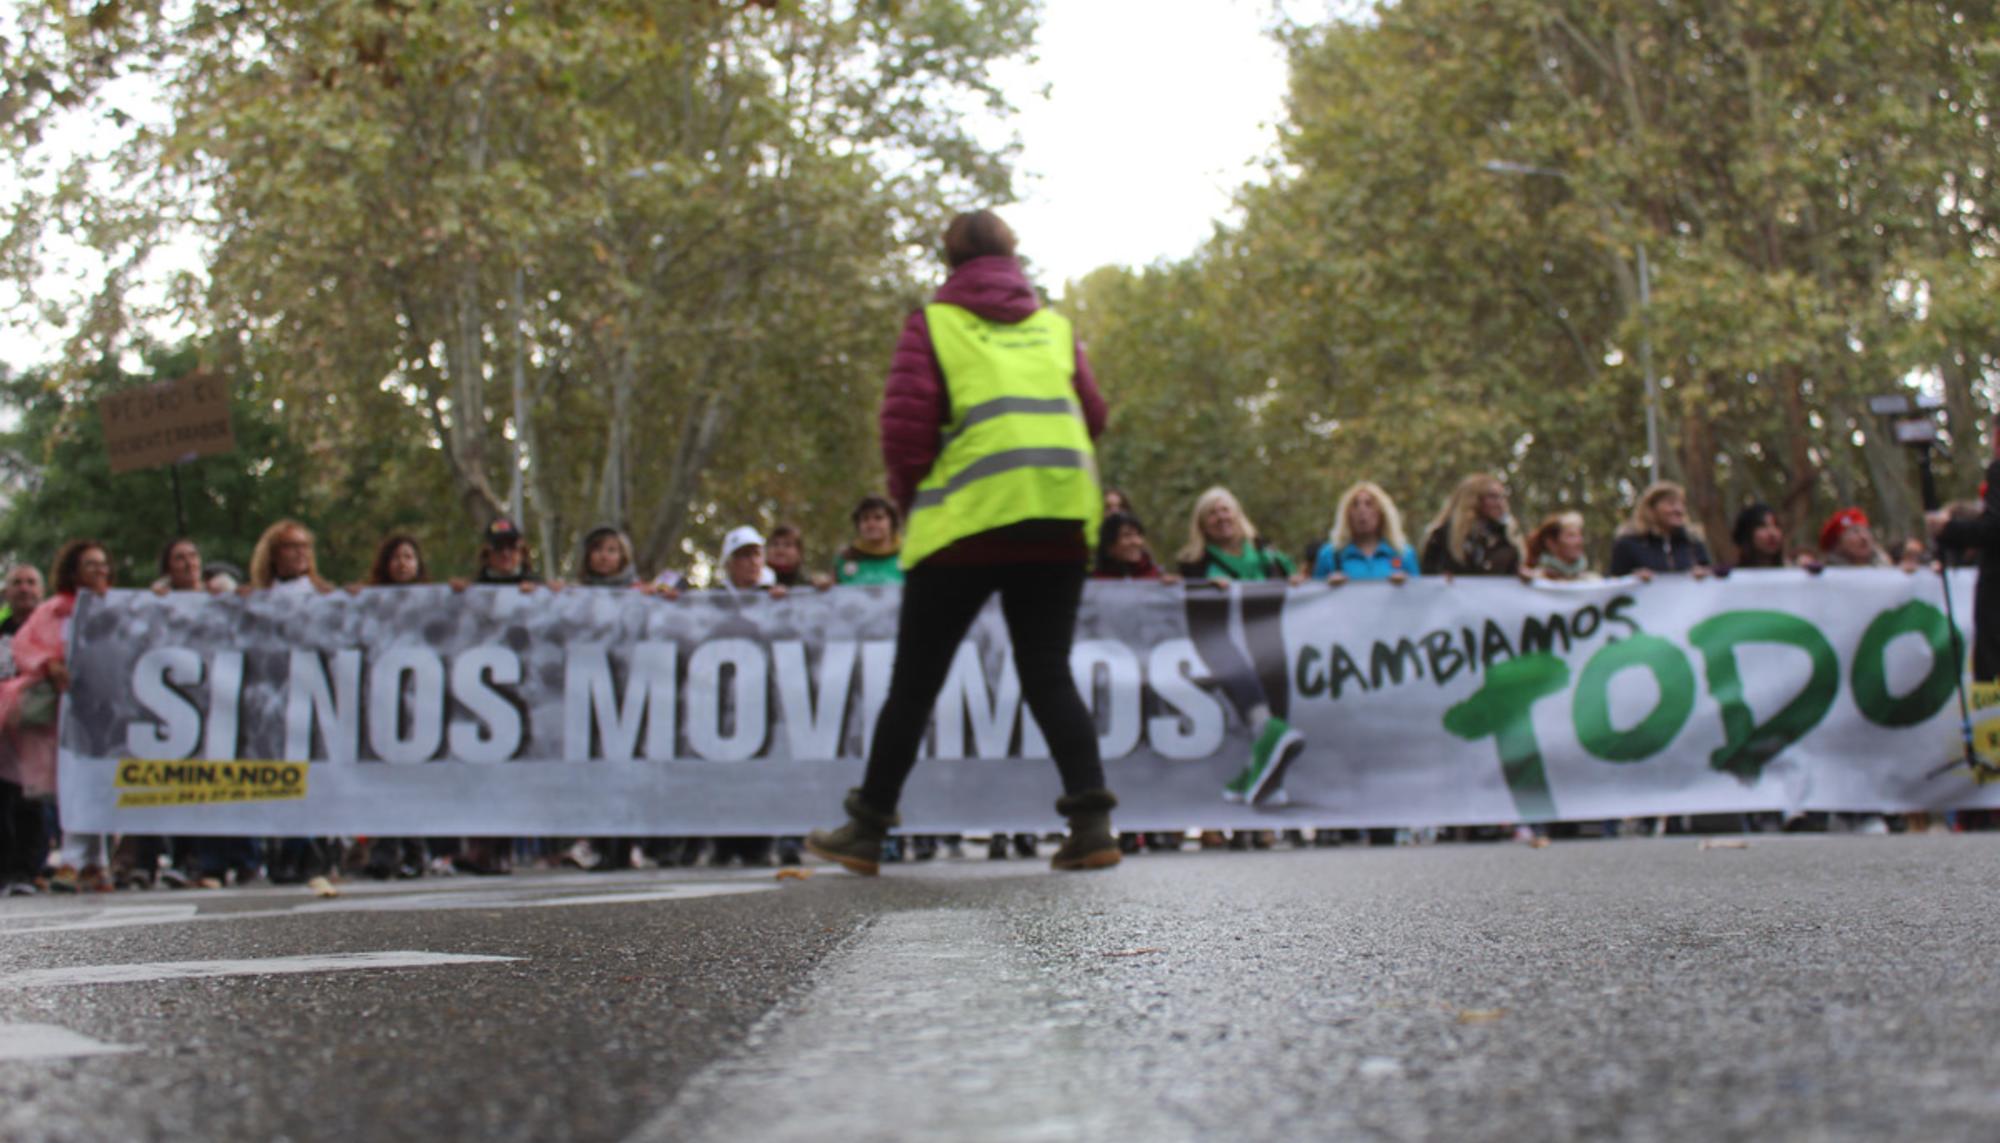 Cabecera de la manifestación con el lema “Si nos movemos, lo cambiamos todo” celebrada el sábado 27 de octubre en Madrid